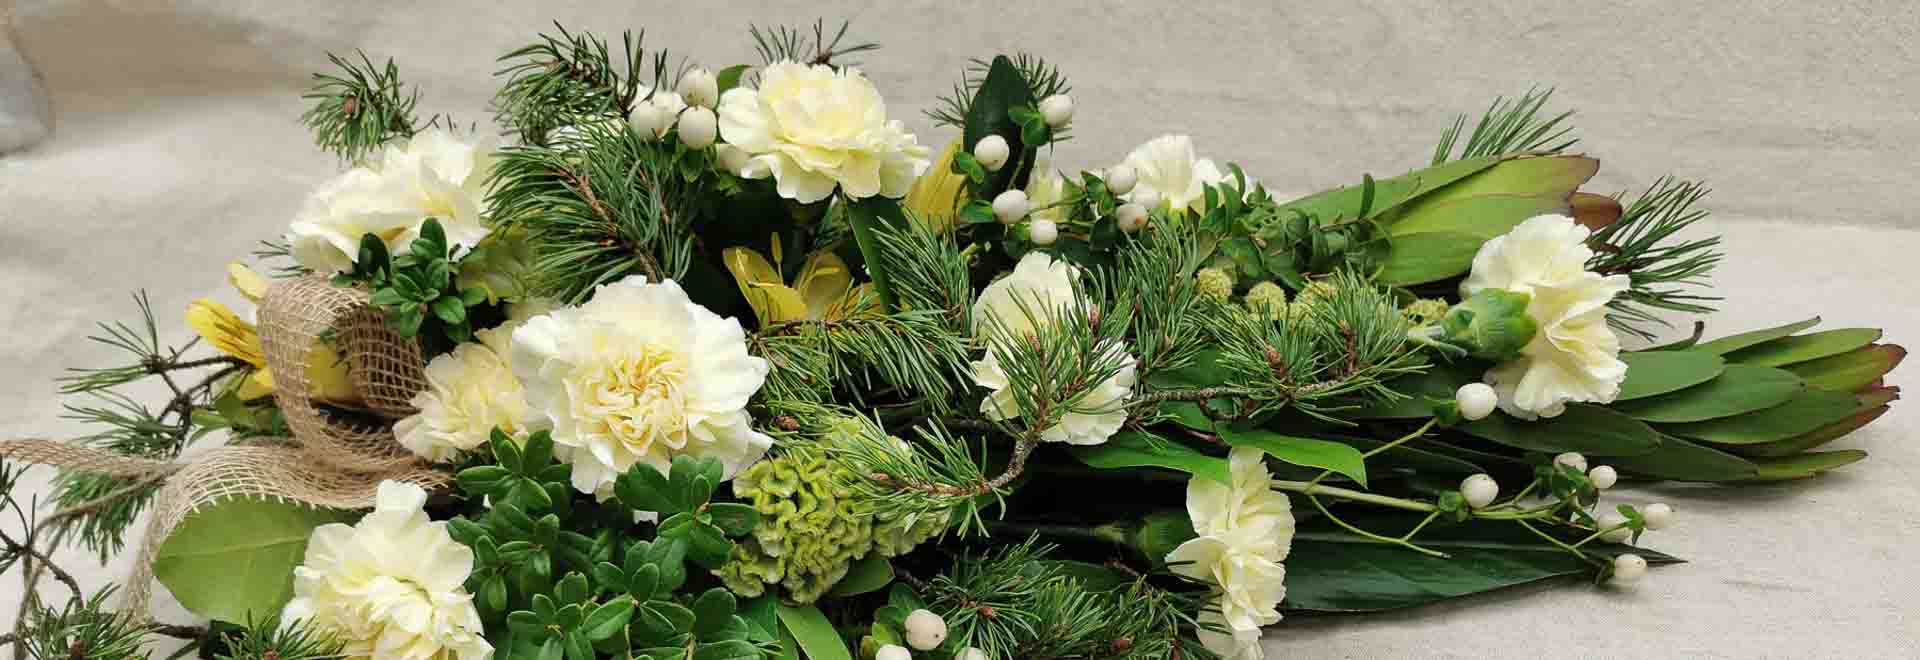 Hautakimppu vai kukkalaite - mitä kukkia viedä hautajaisiin? Olemme koonneet yhteen tietoa kukkien viemisestä hautajaisiin.